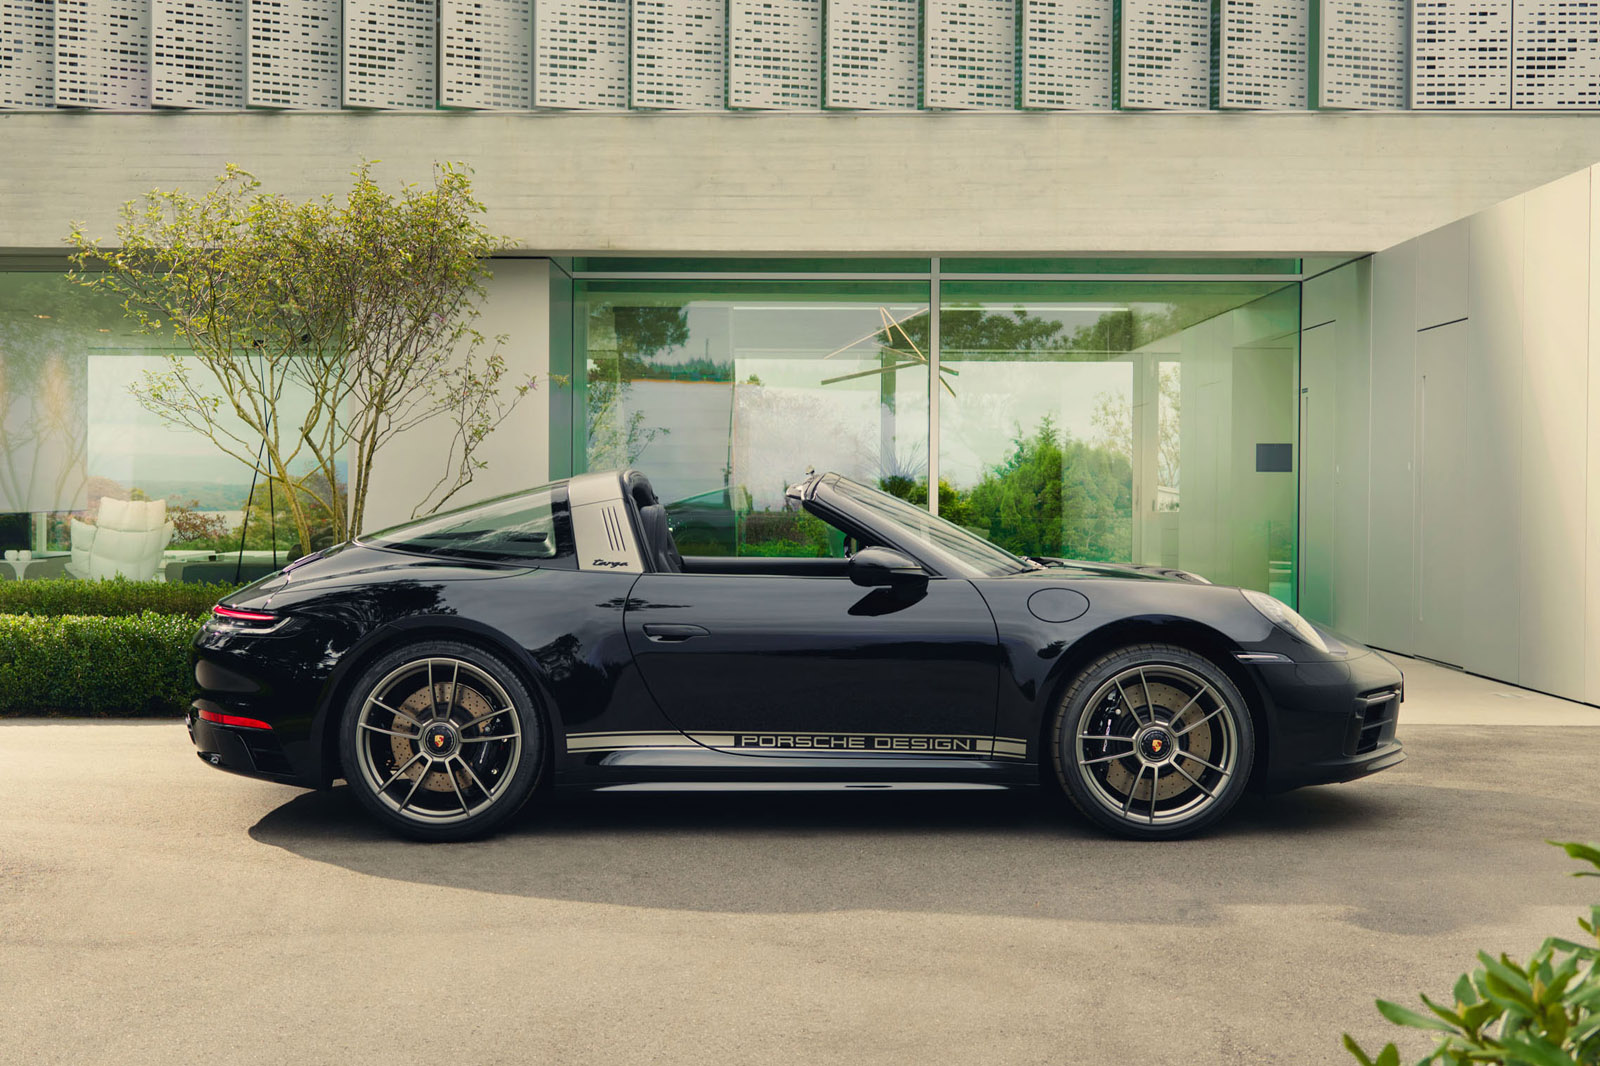 Porsche Design® Official Site